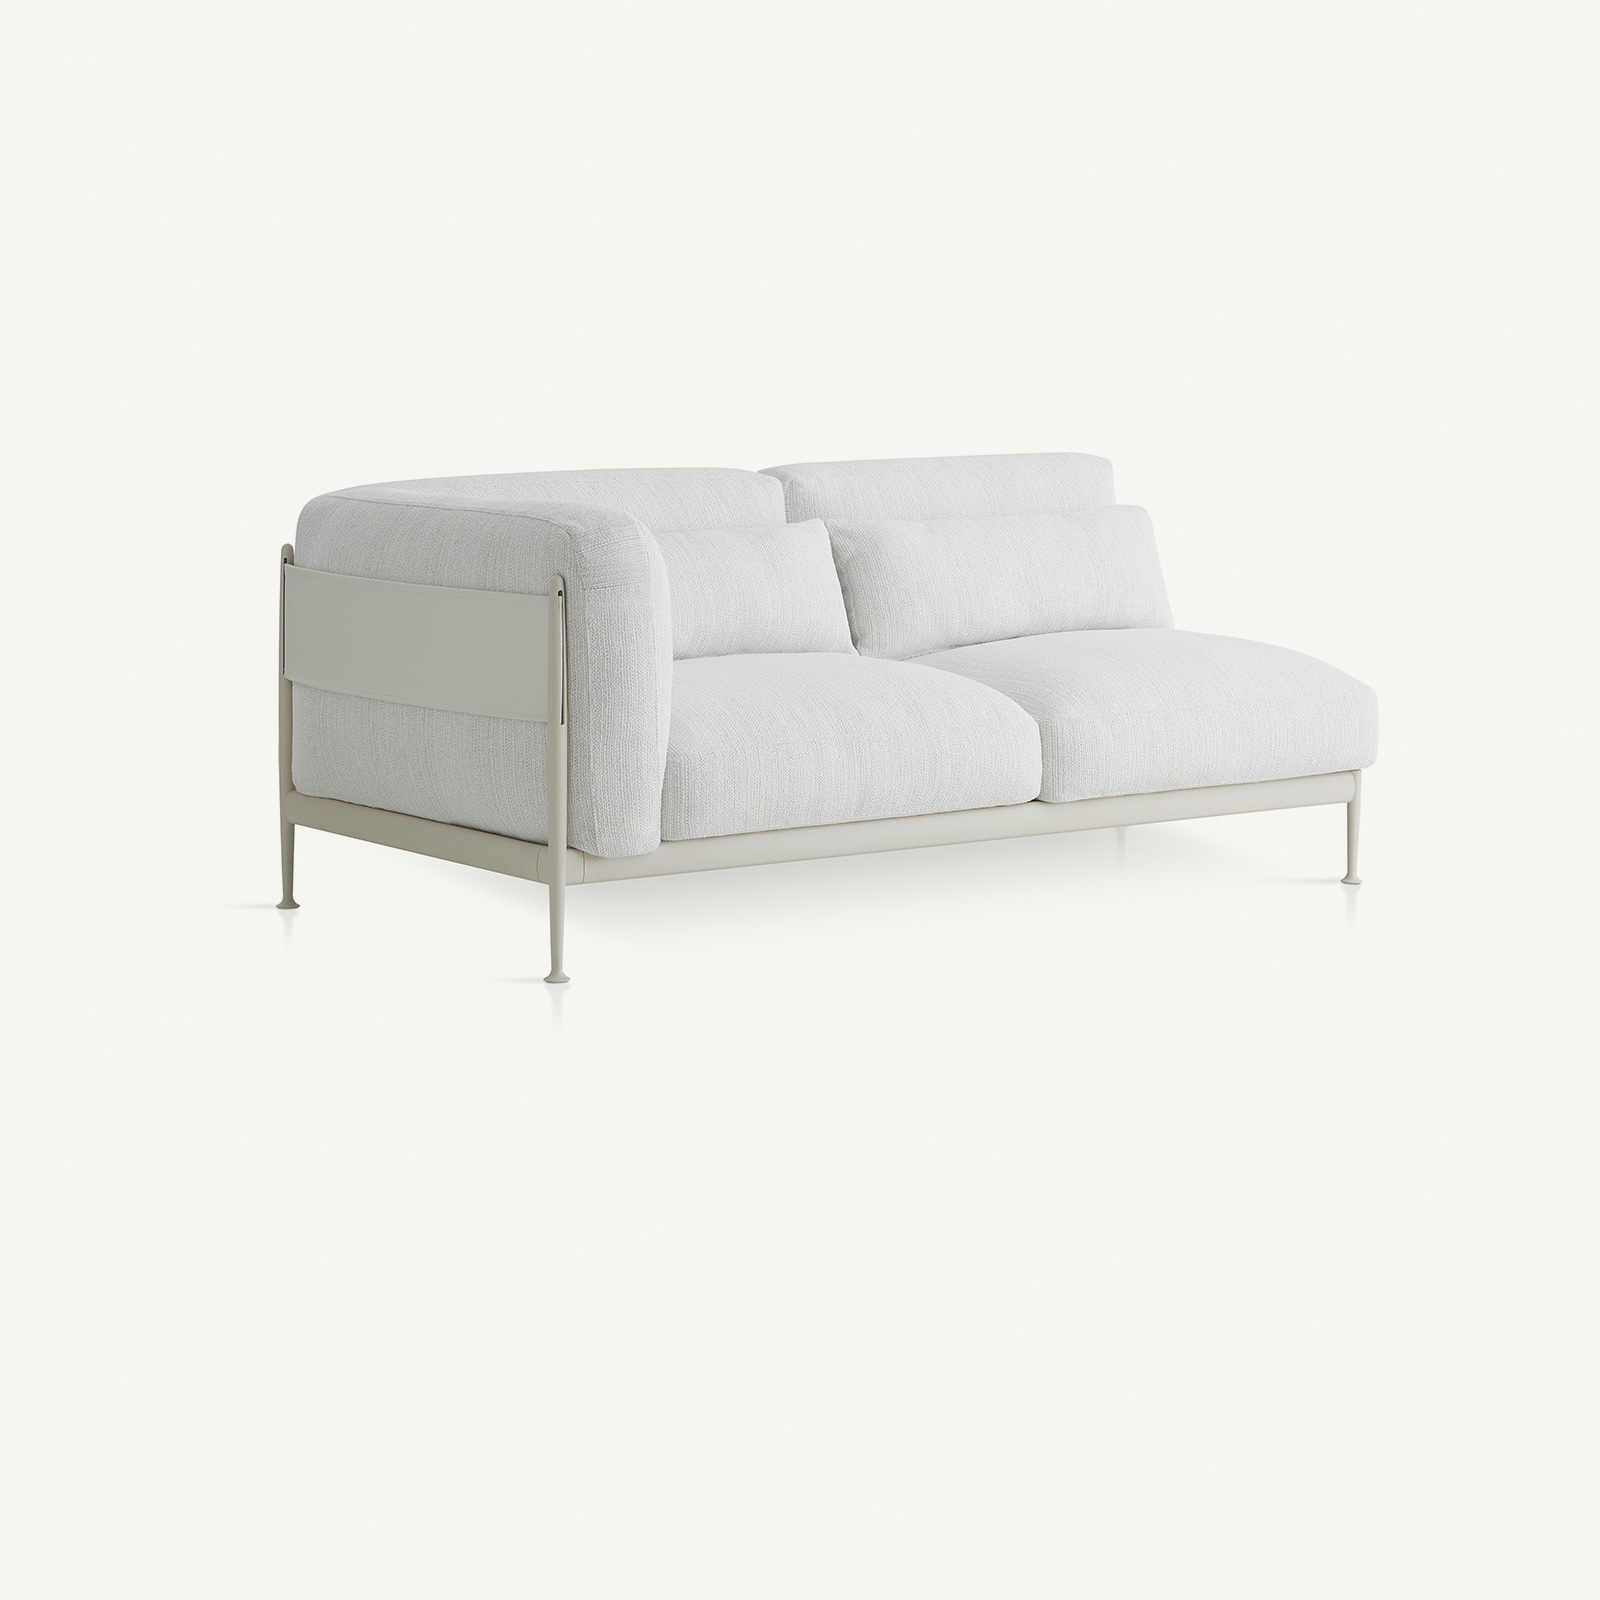 sofas - linkes modul obi